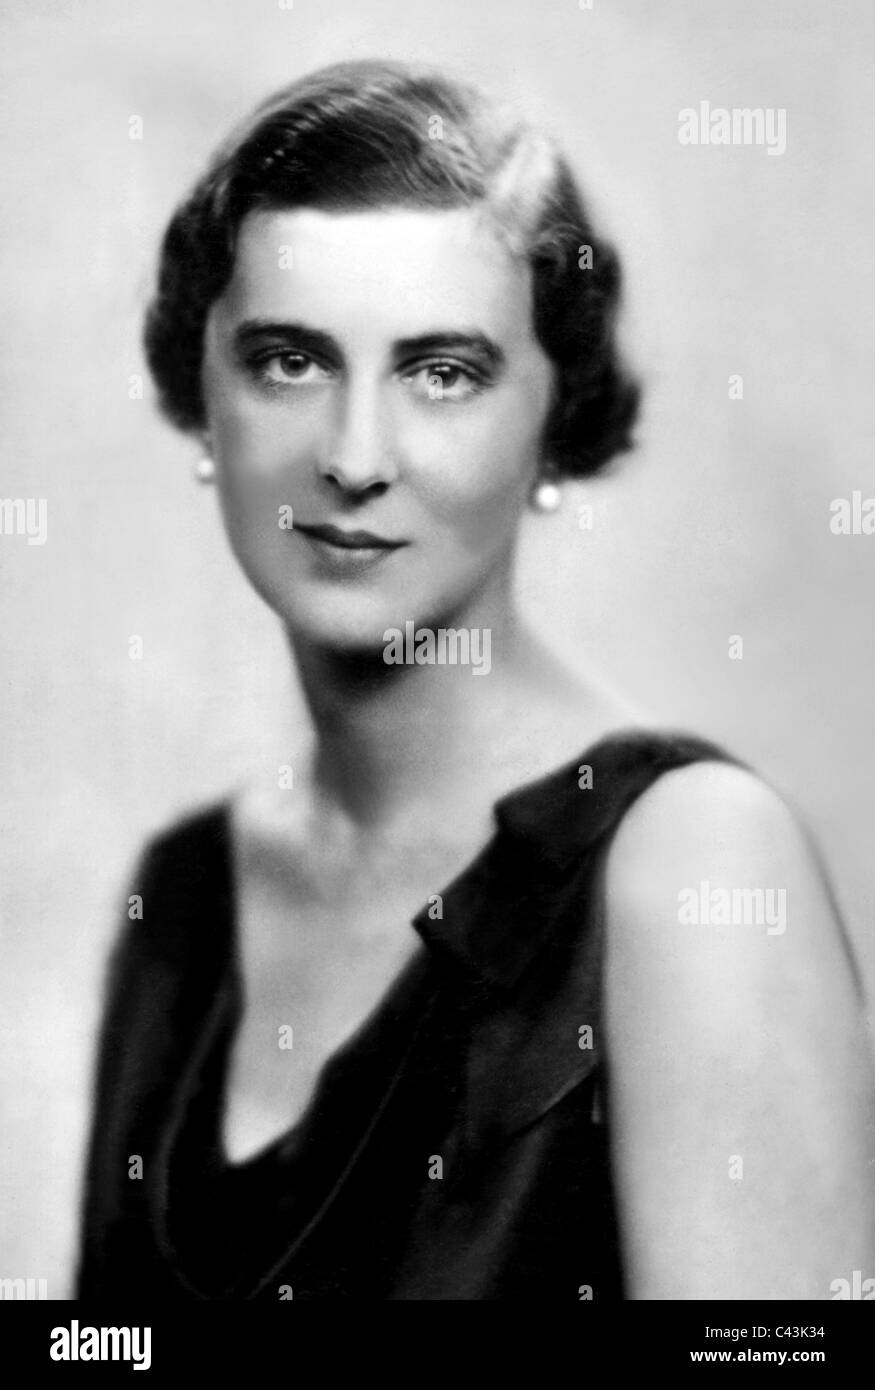 La princesa MARINA DE GRECIA la familia real el 25 de marzo de 1936 Fecha aproximada Foto de stock